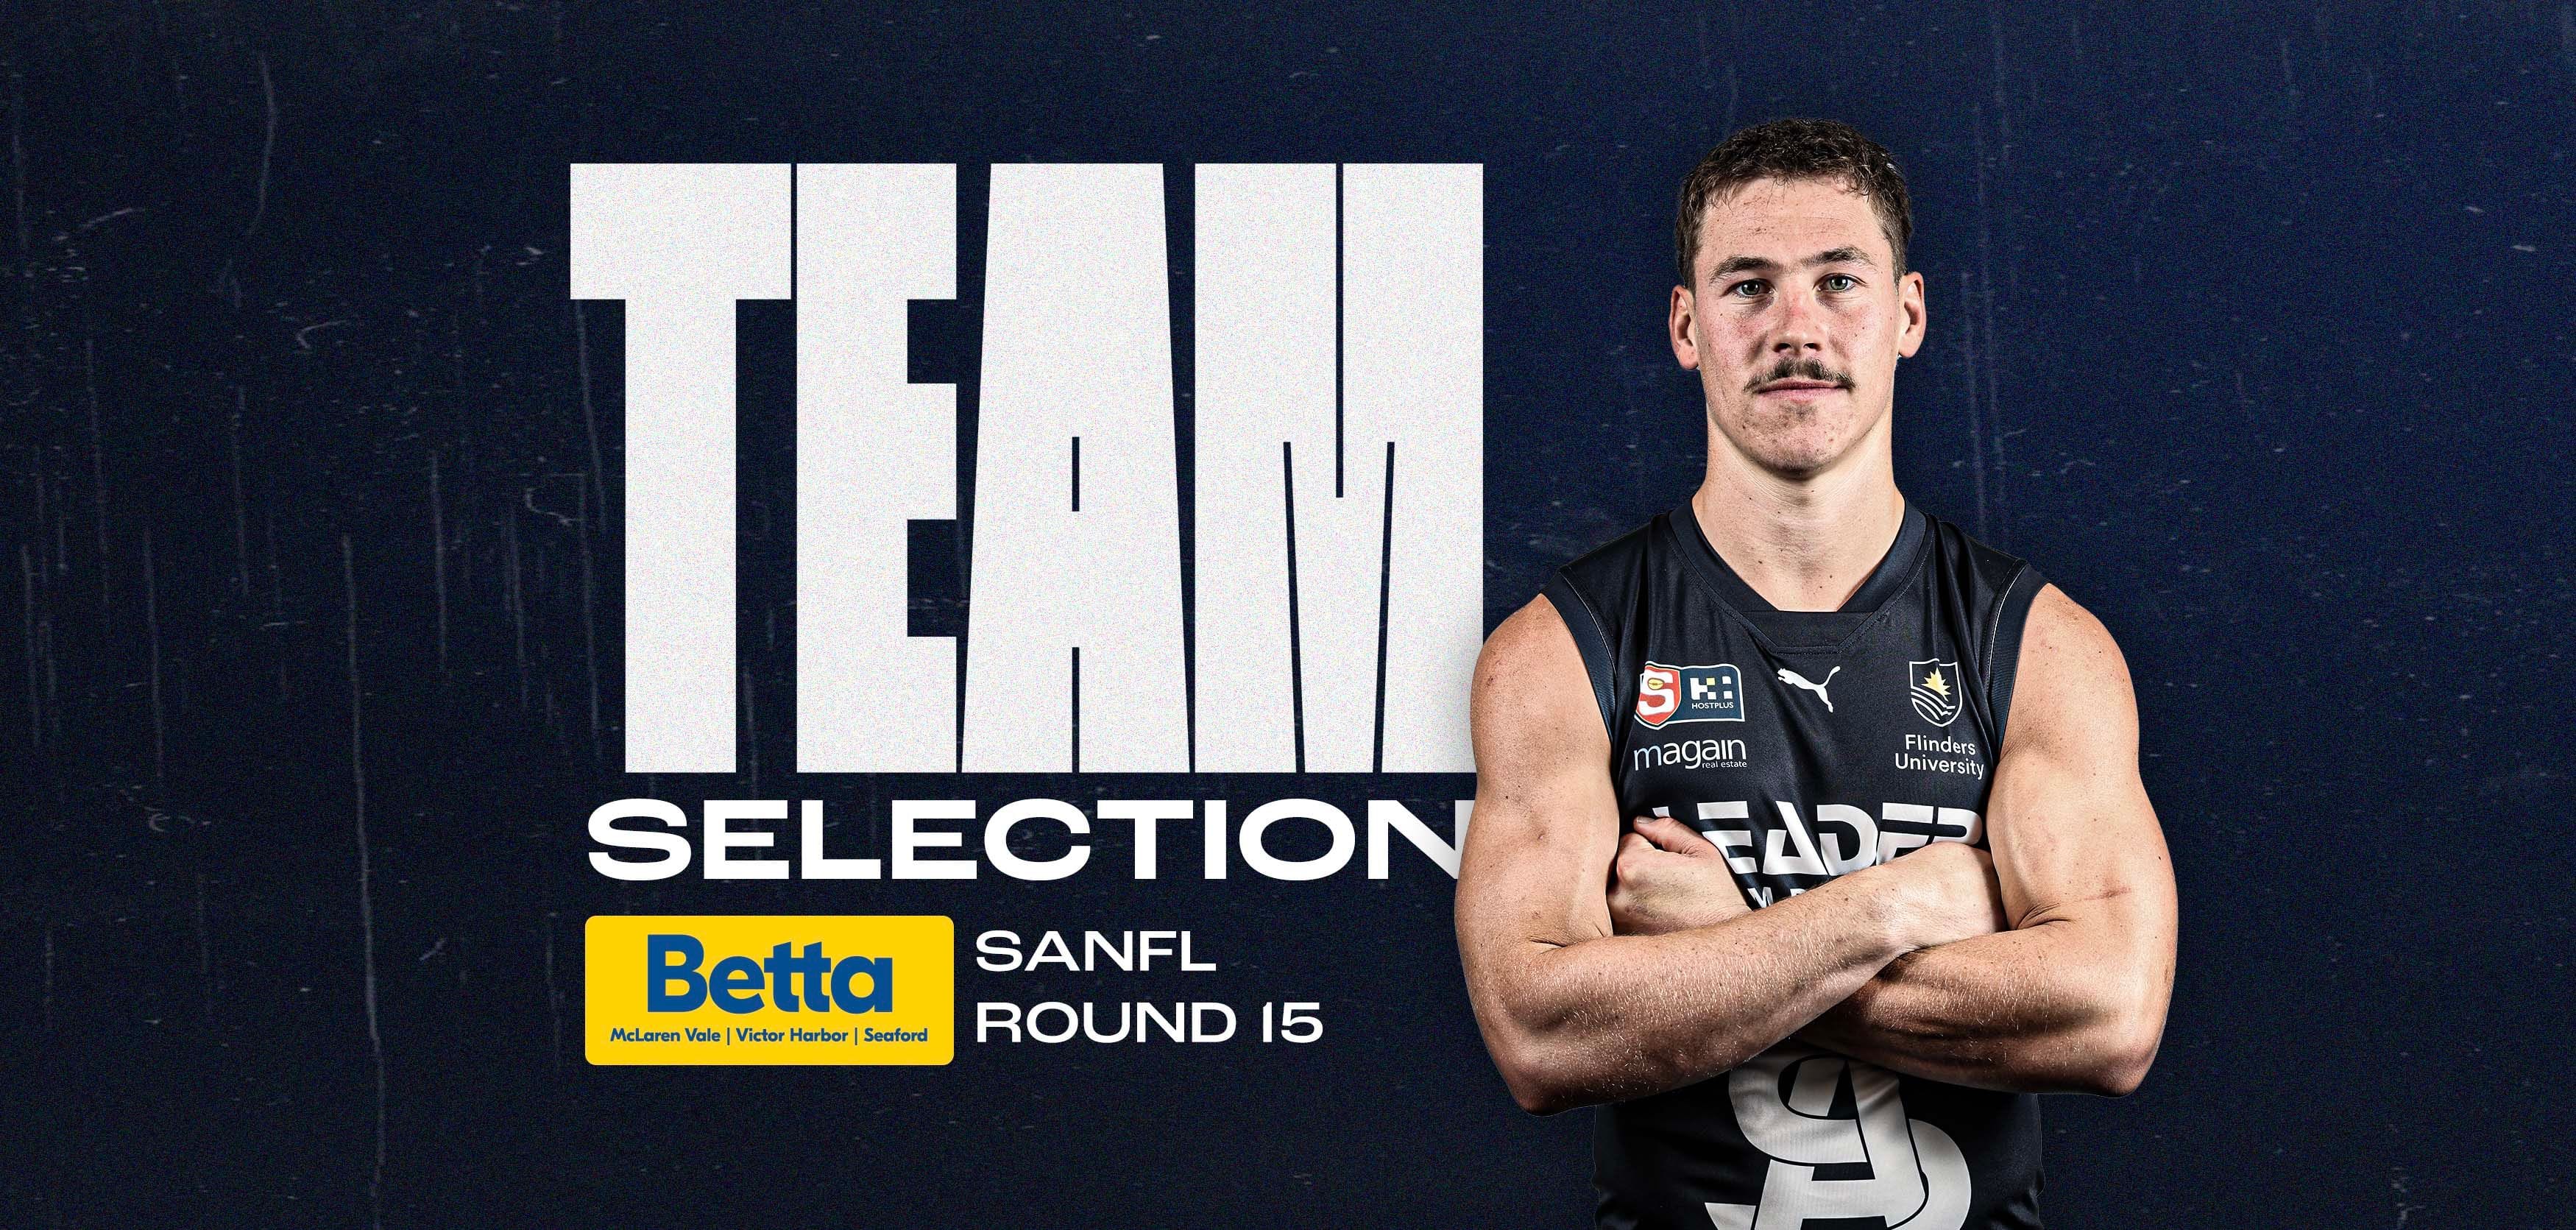 BETTA Team Selection: SANFL Round 15 v Port Adelaide